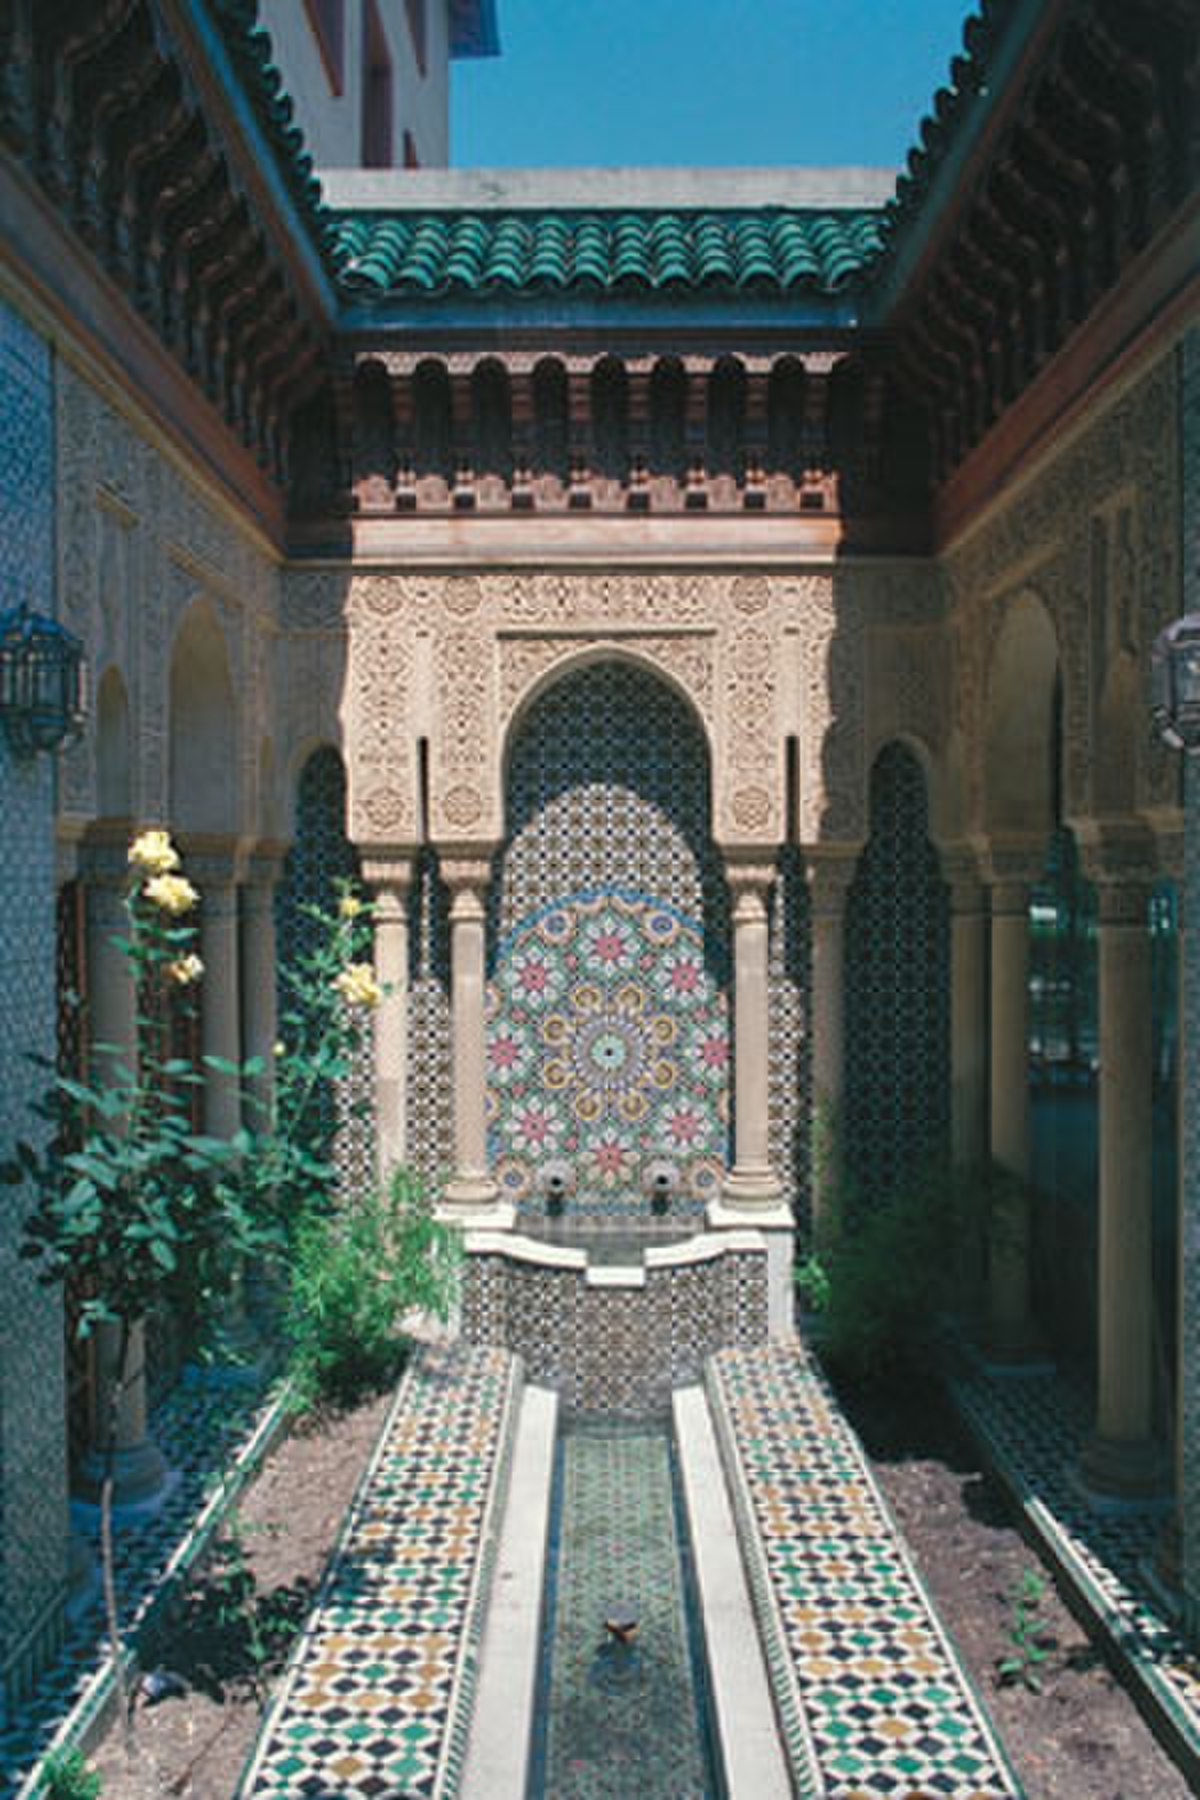 Maison du maroc.jpg